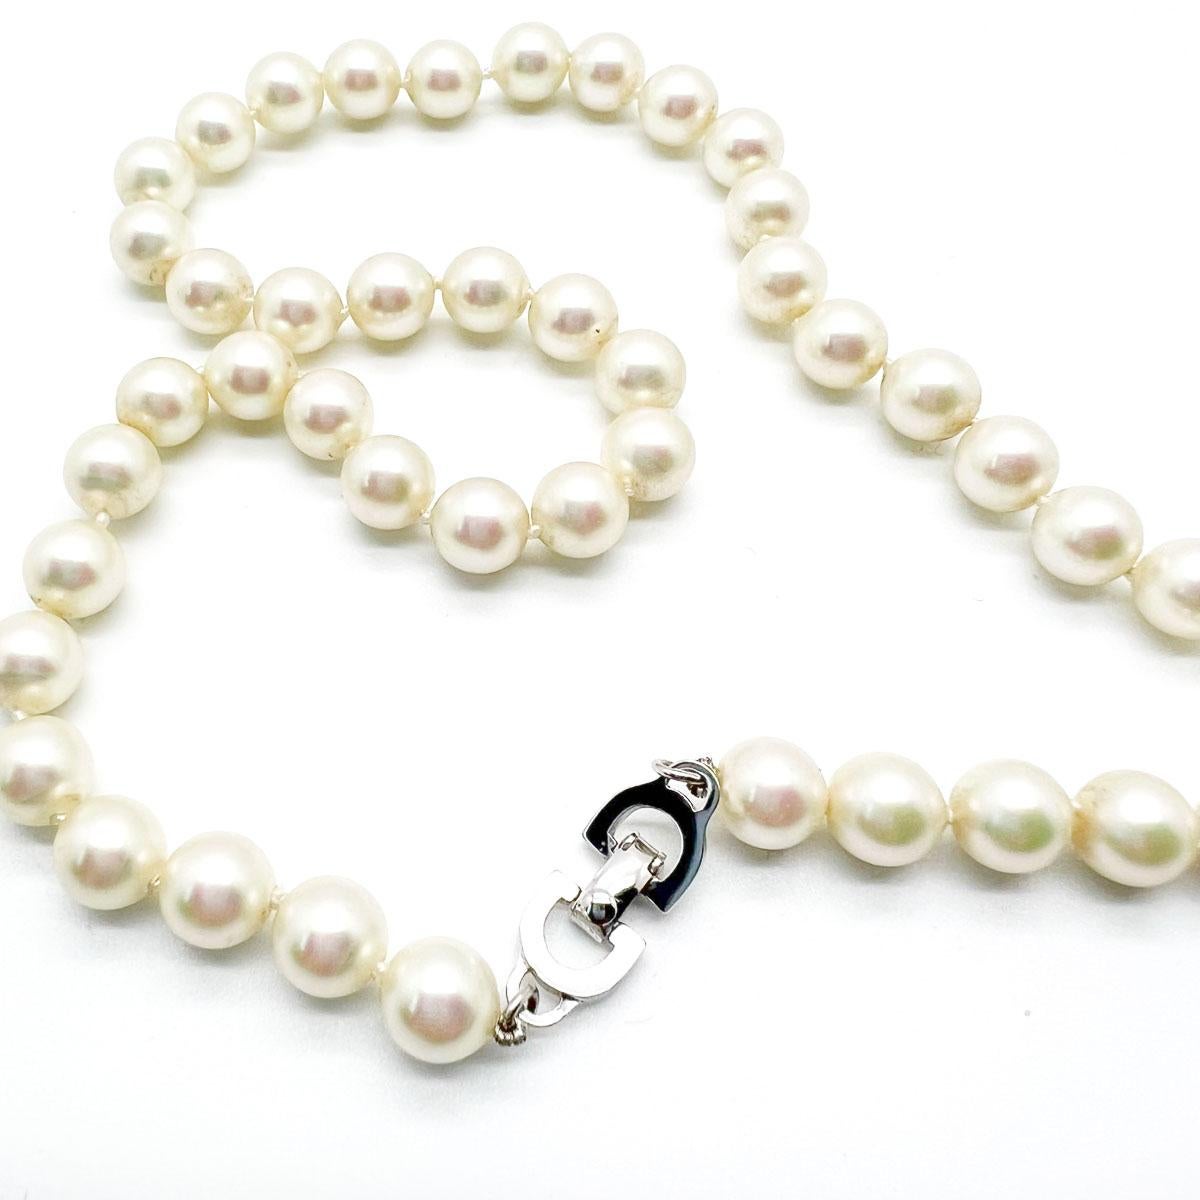 Totalement chic, ce collier de perles Vintage Dior est l'incarnation même du style et de la sophistication et traversera les décennies avec aisance.
Avec des pièces d'archives de sa propre collection Dior exposées dans l'exposition Dior Designer of